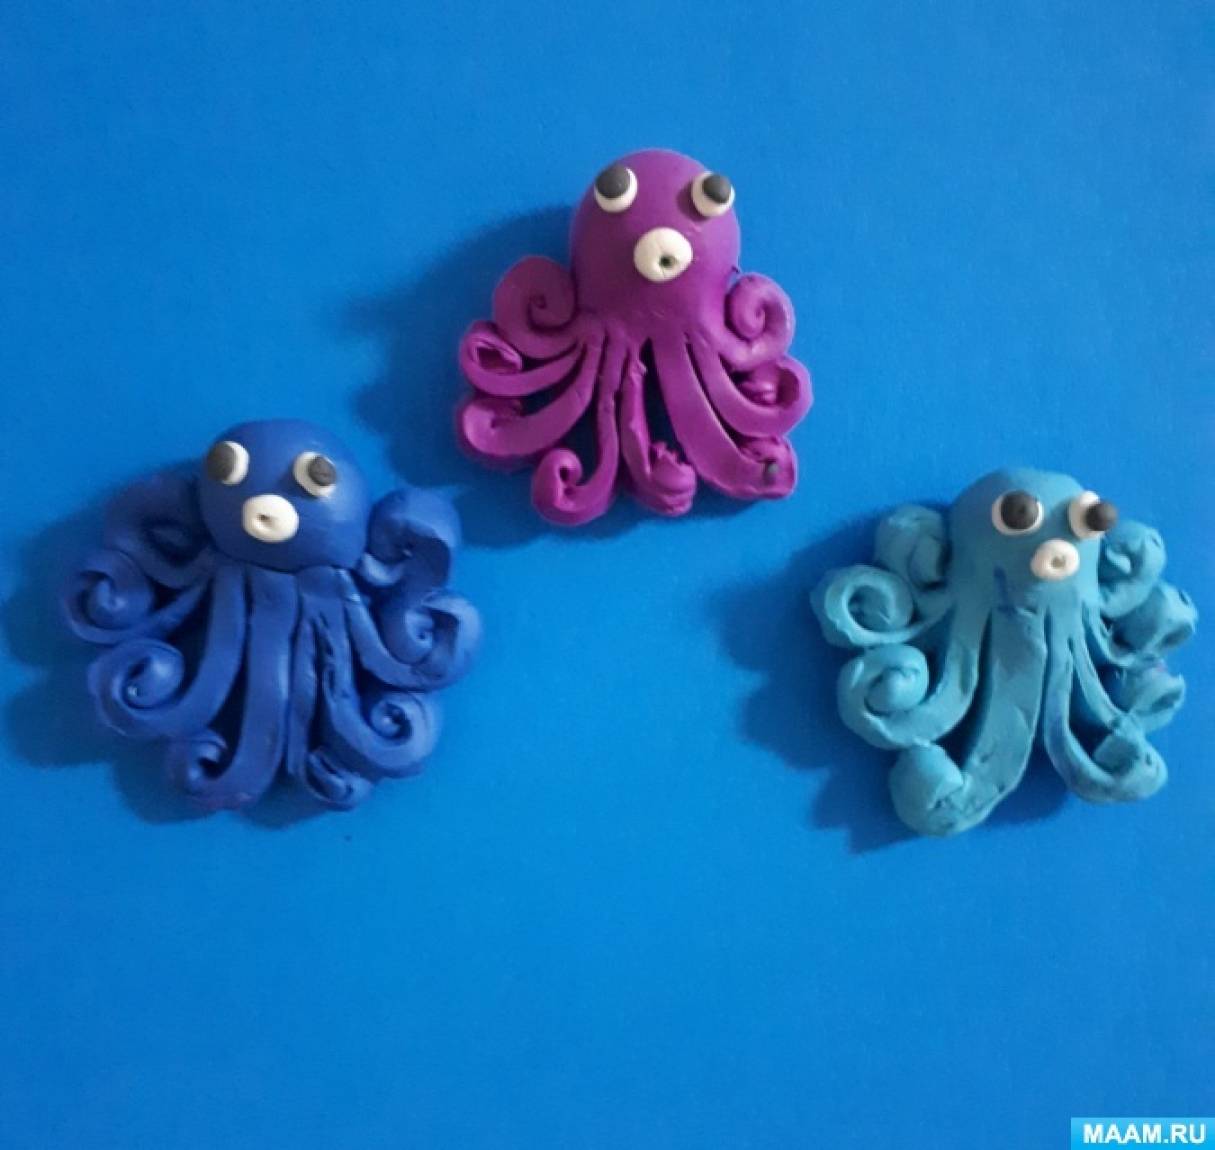 Детский мастер-класс по лепке осьминогов из пластилина «Семья морских обитателей»